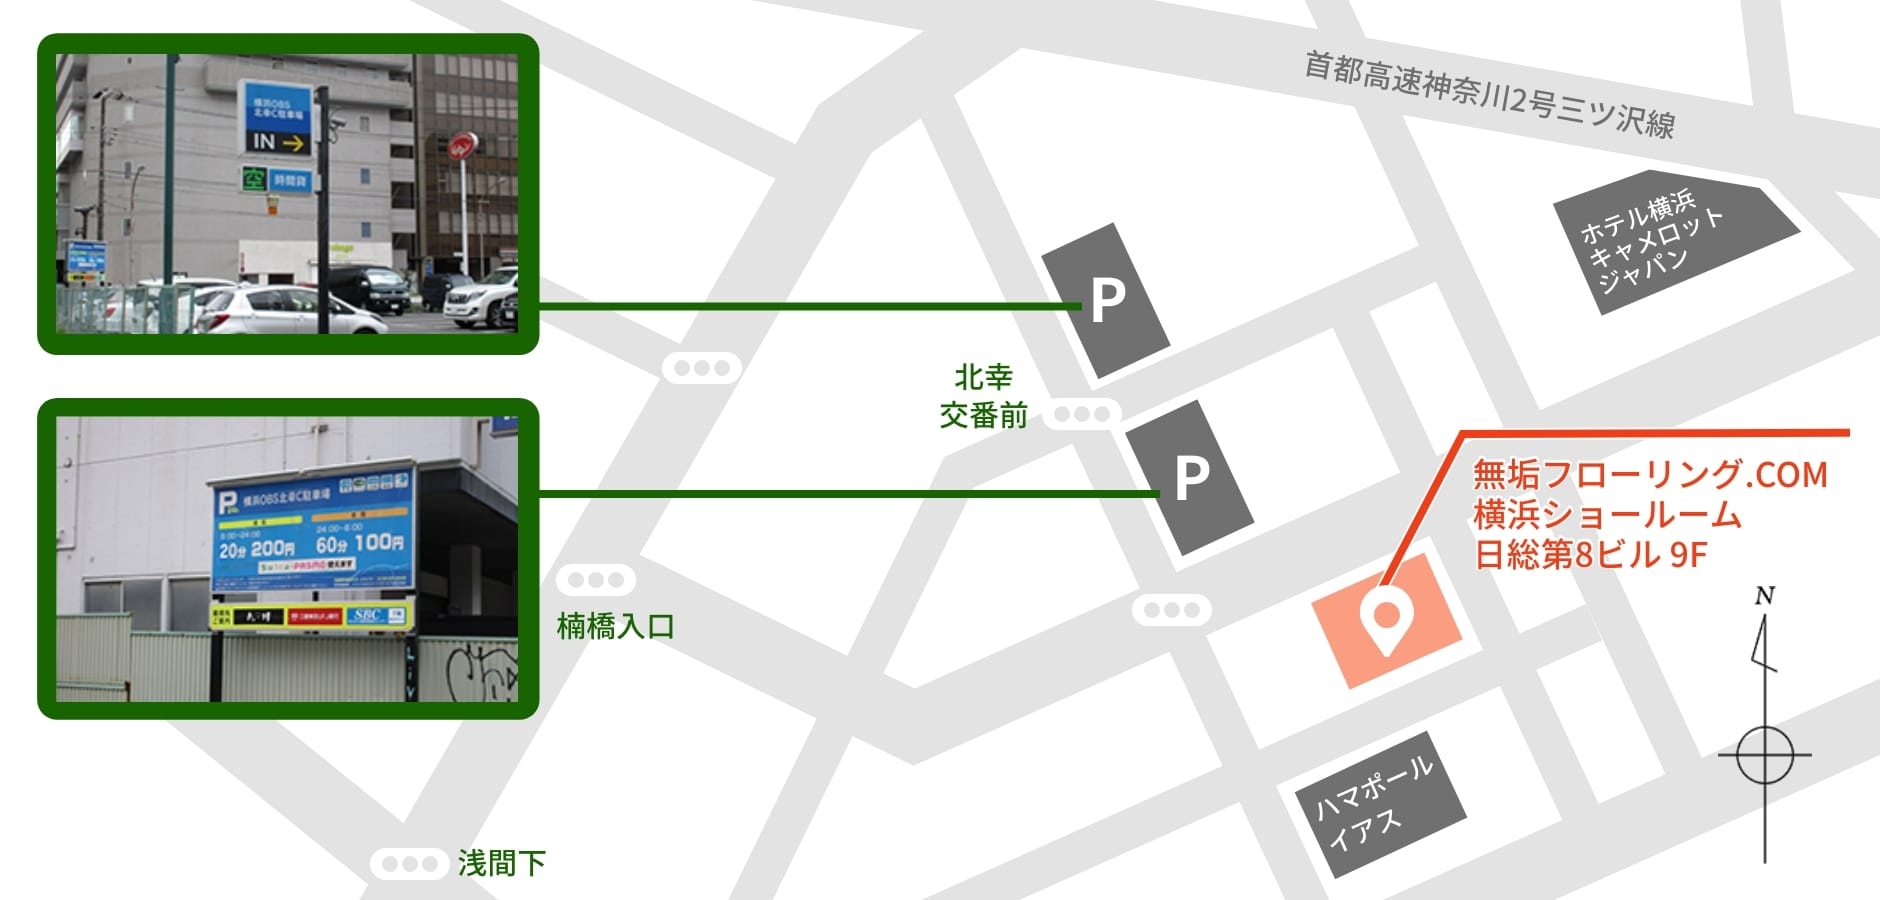 横浜ショールーム駐車場の地図